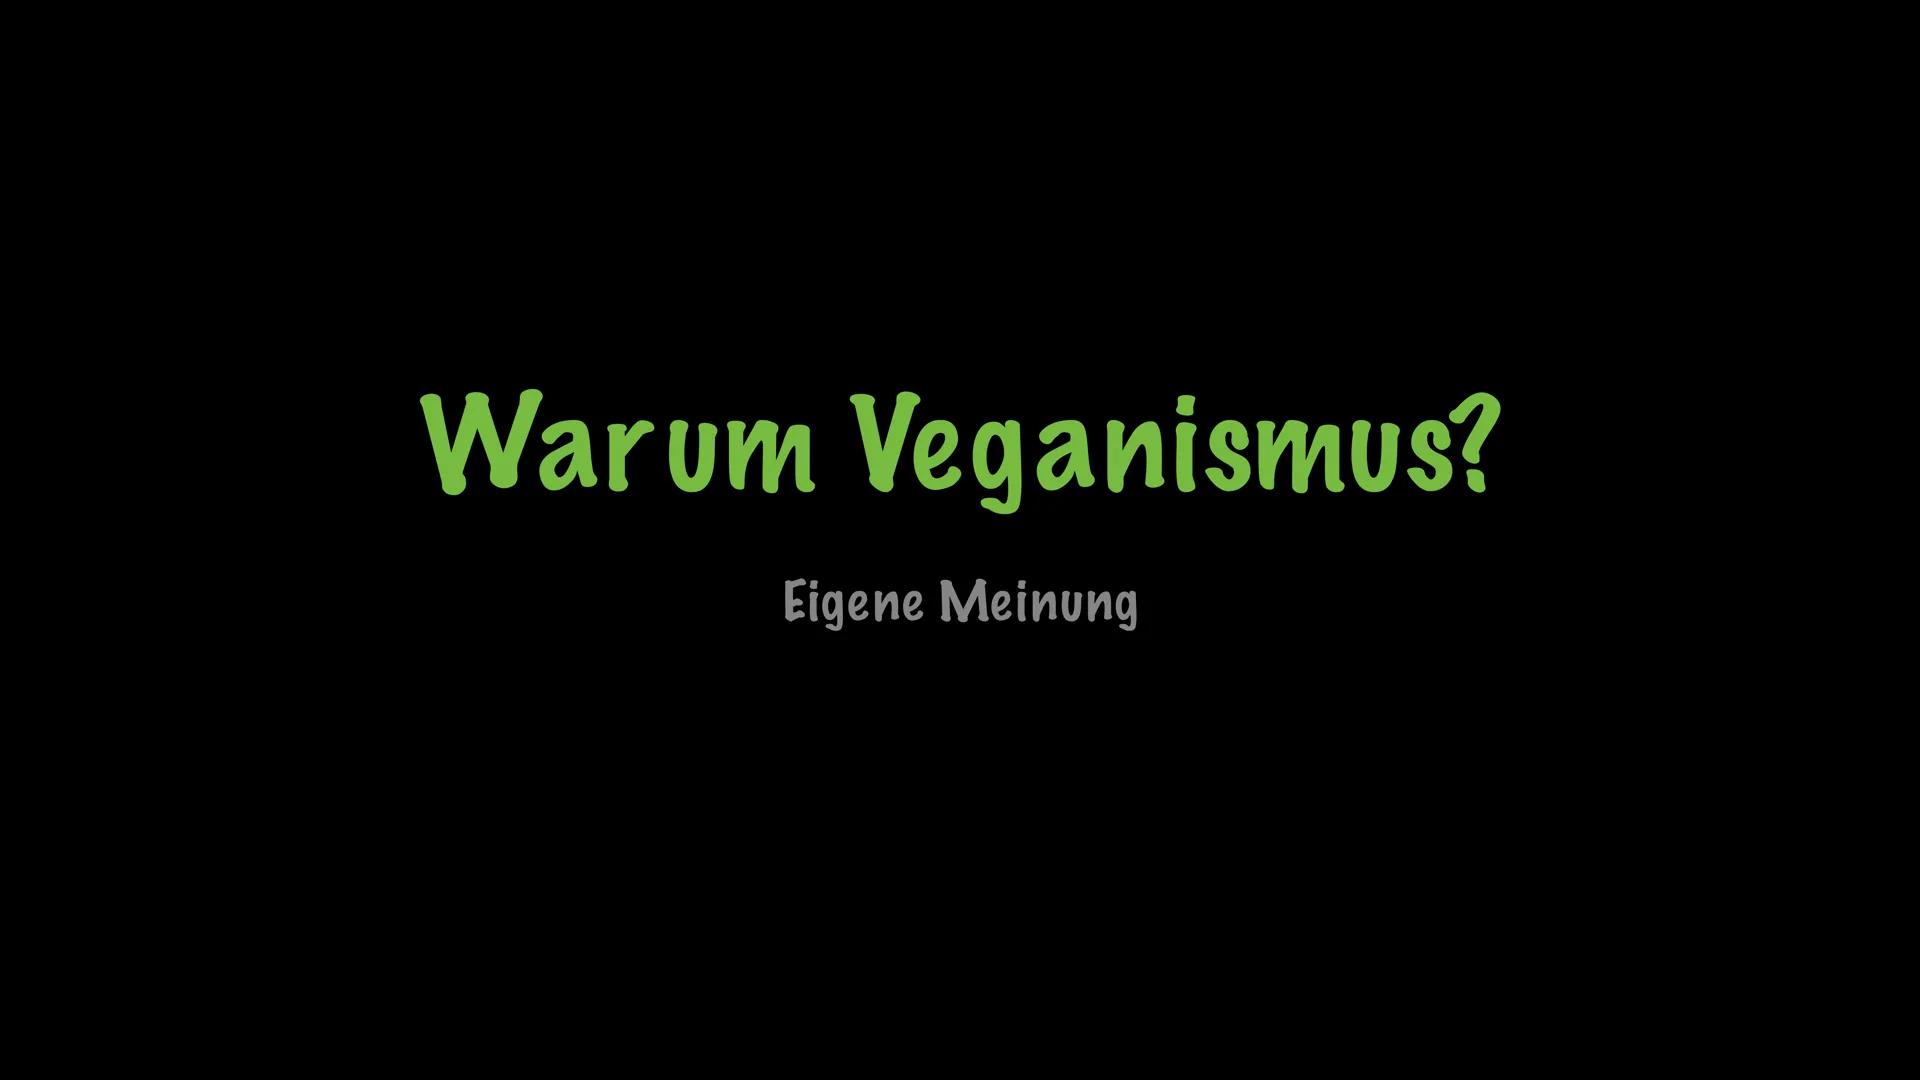 Herzlich willkommen zu meinem
Referat über Veganismus Gliederung
* Was ist Veganismus
* Was sind die Gründe
* Gesundheitliche Nachteile
* Ge